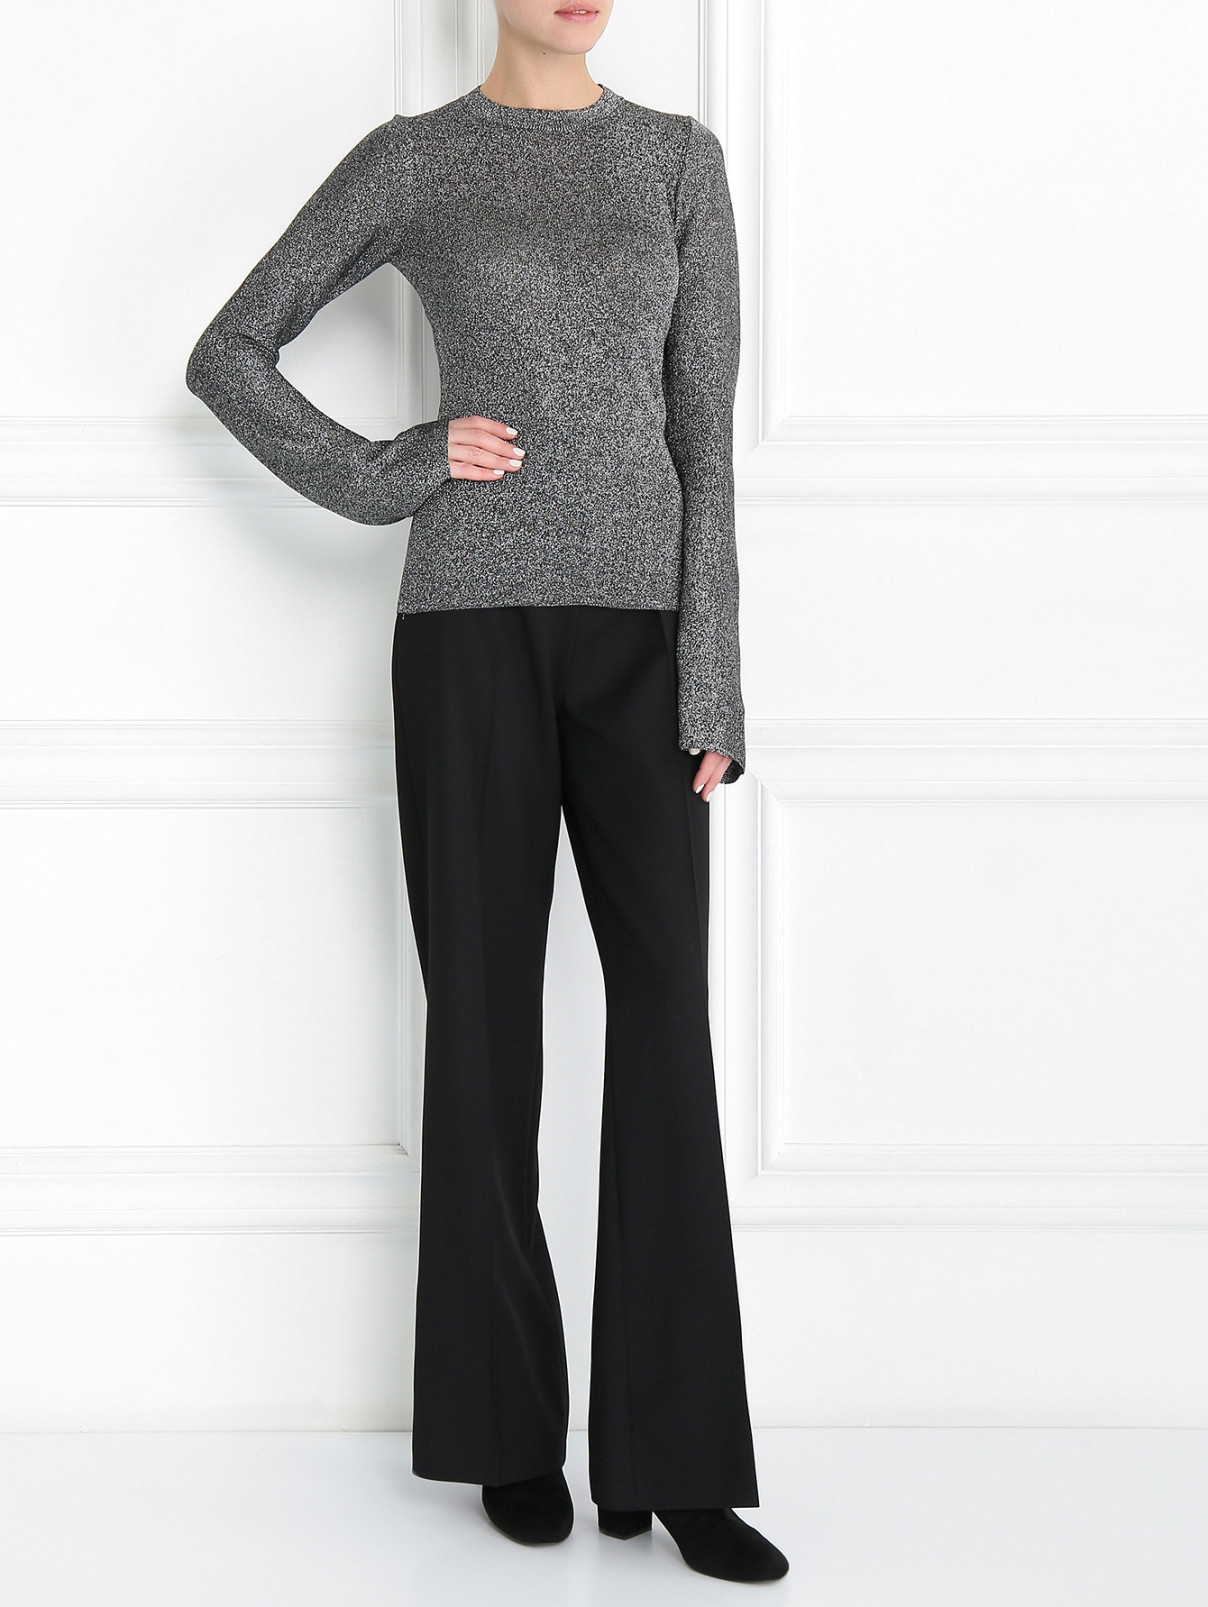 Прямые брюки из шерсти Burberry  –  Модель Общий вид  – Цвет:  Черный